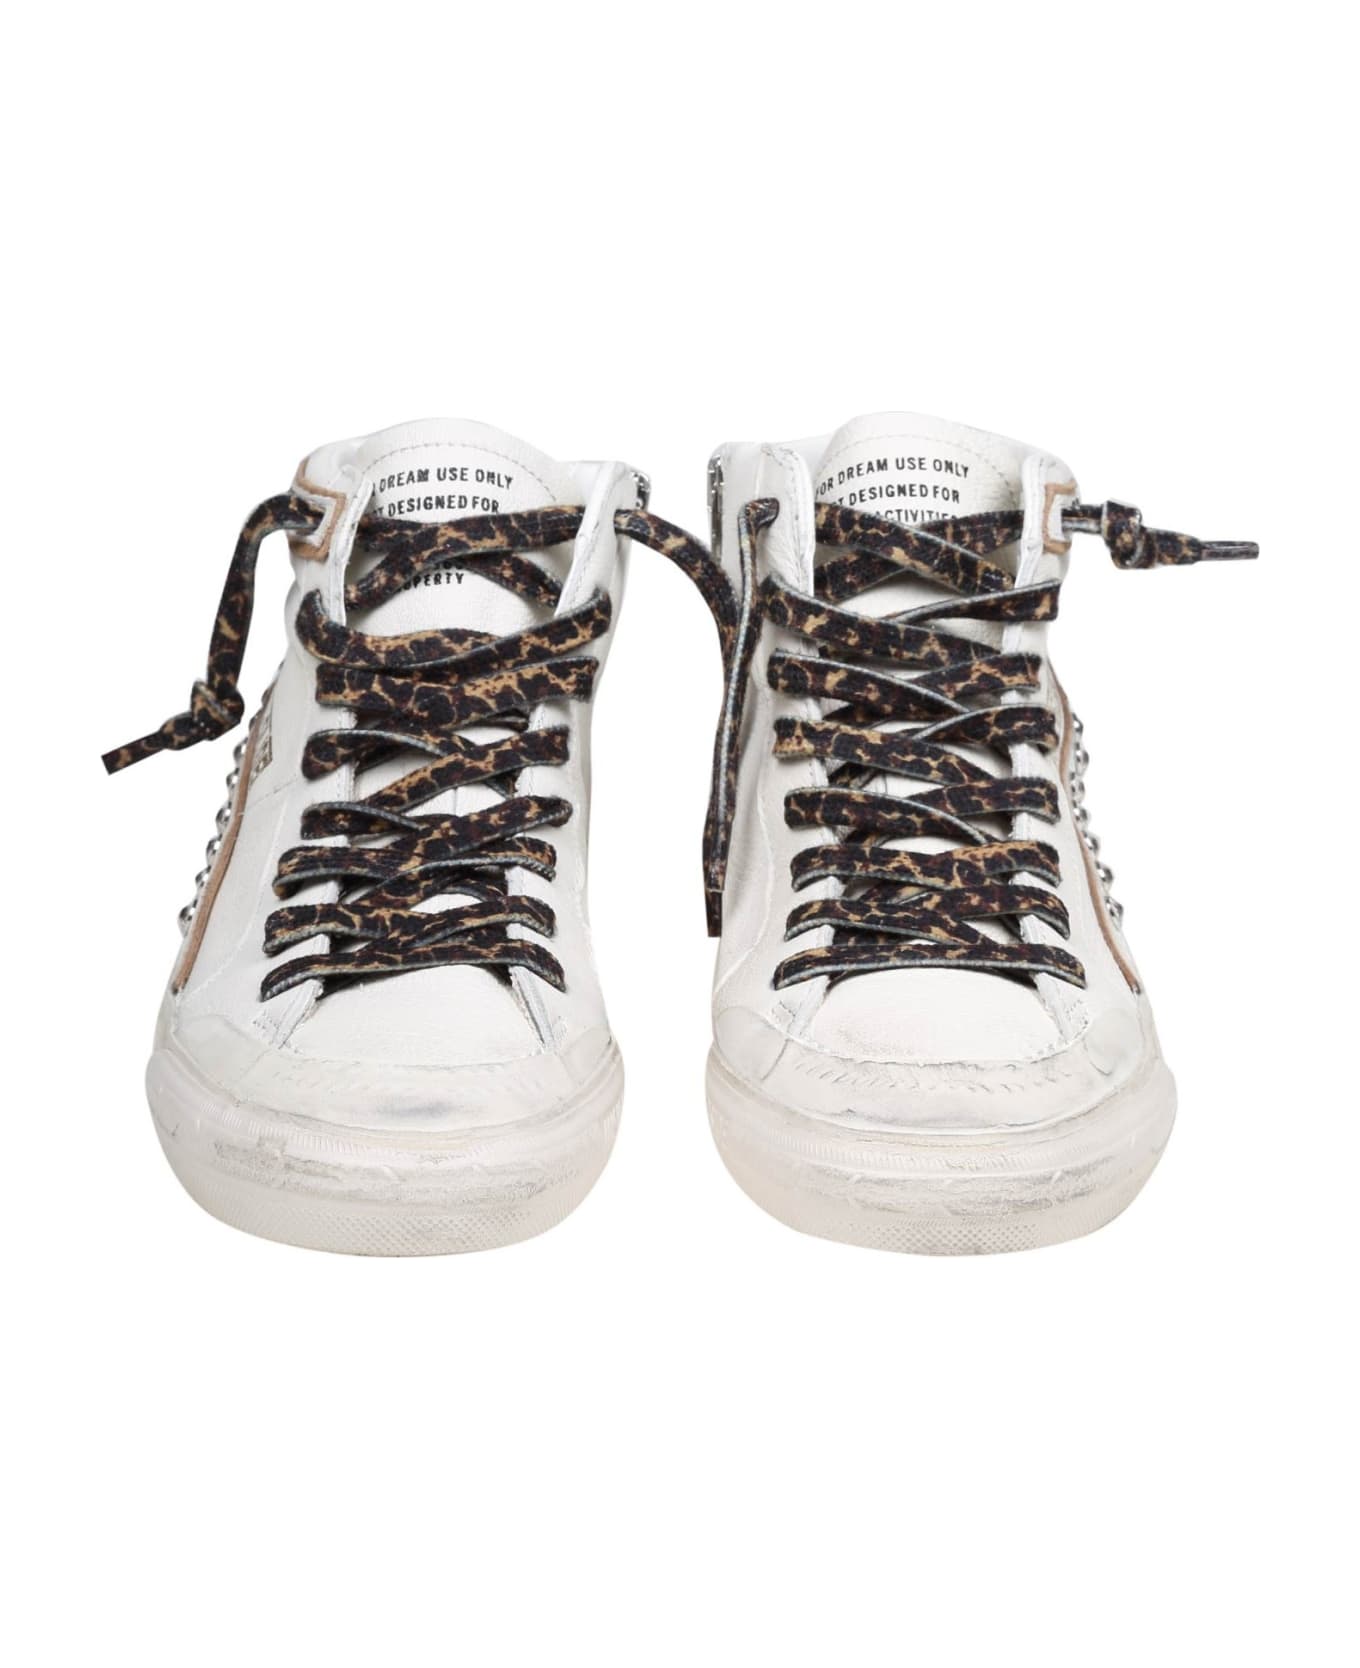 Golden Goose Slide Slide Penstar Sneakers In White Leather - White/Platinum